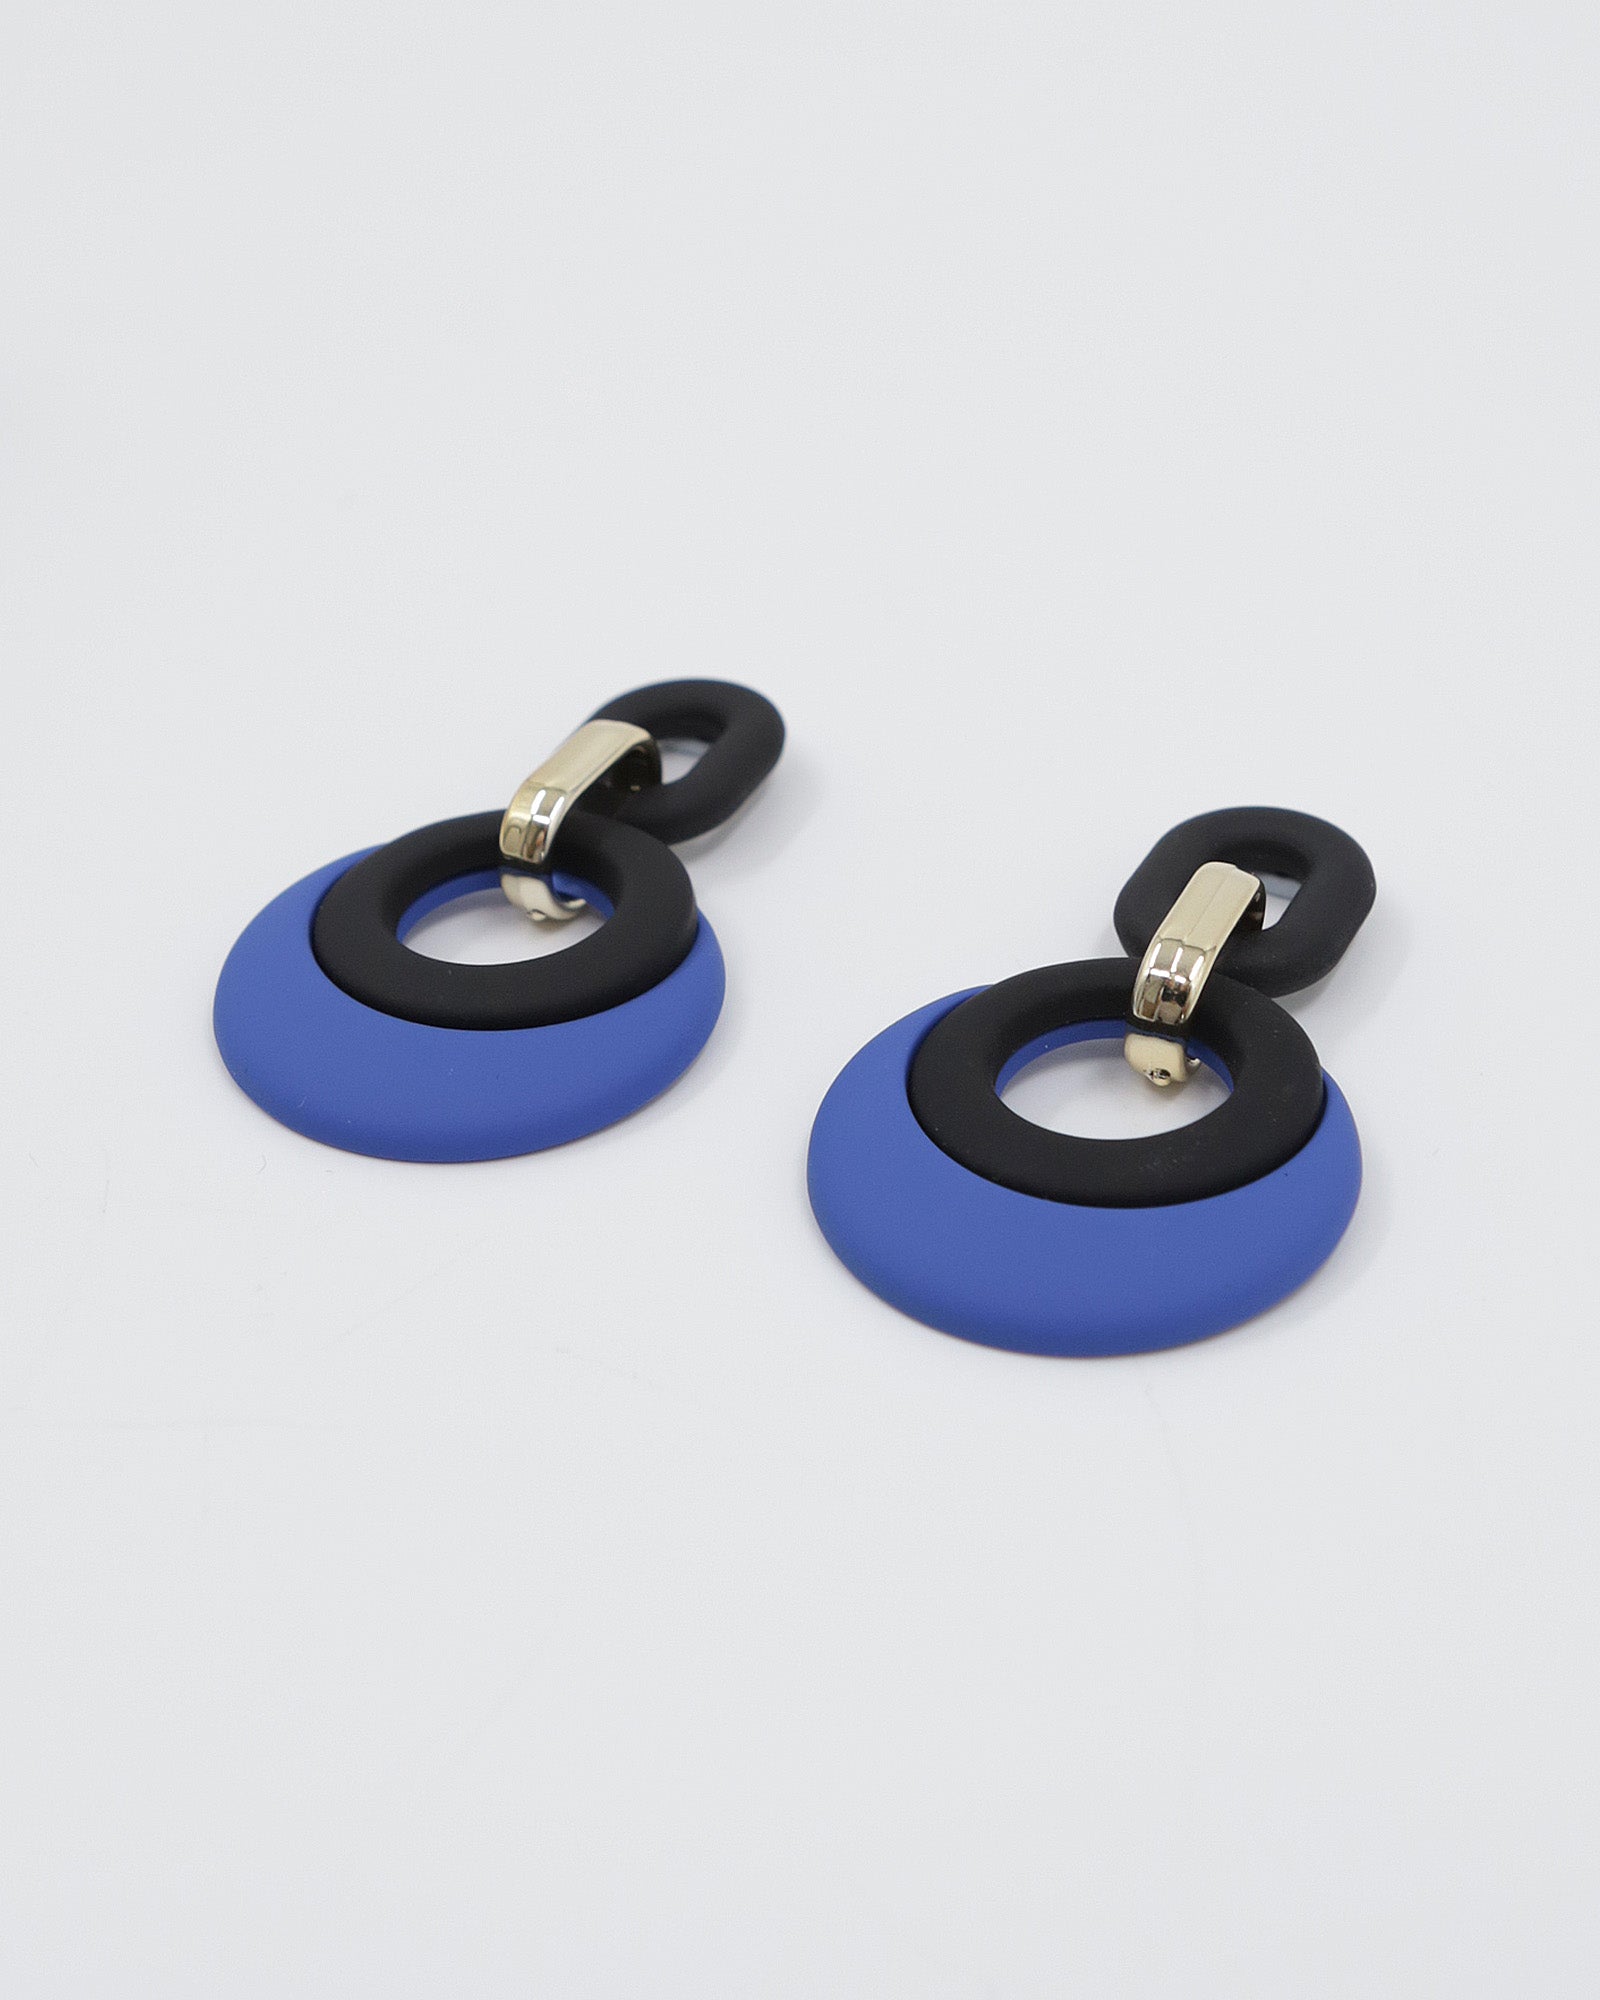 LIZZIE Earrings (black & blue)